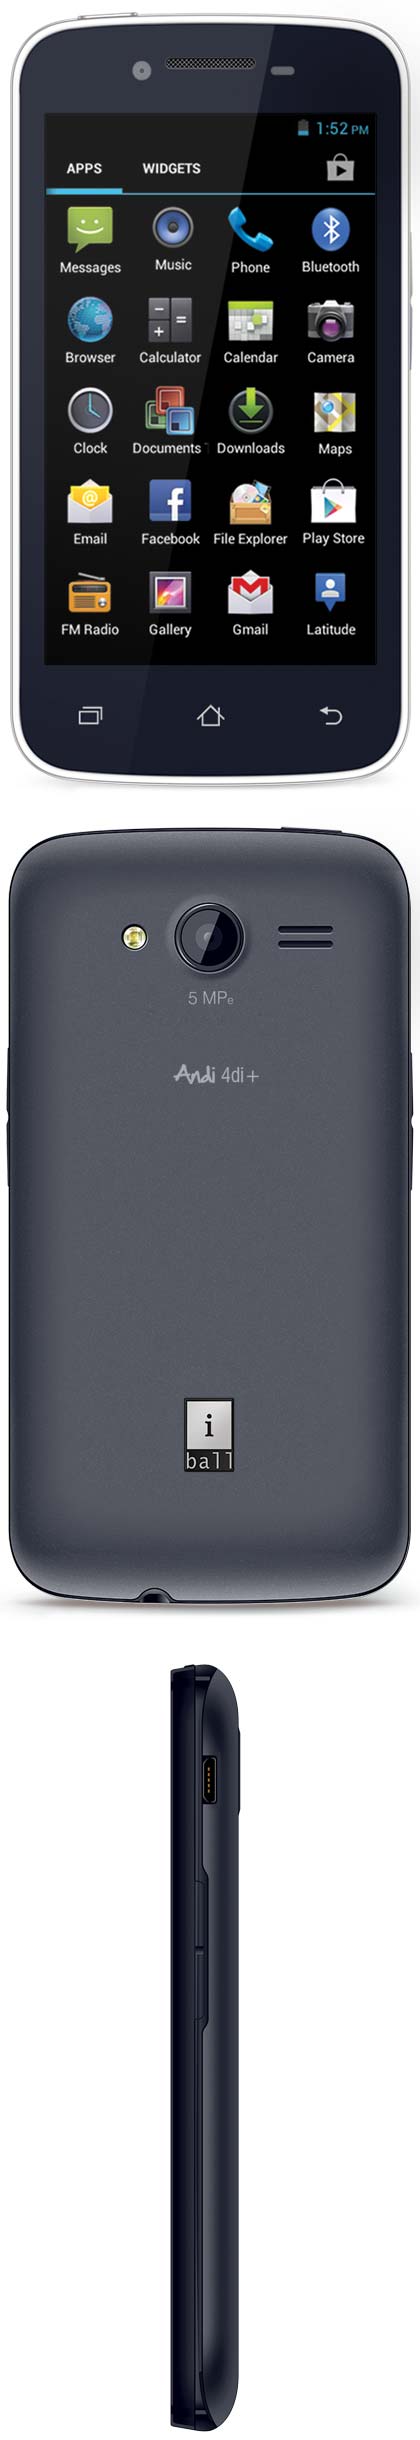 Новый смартфон Andi 4Di+ от iBall